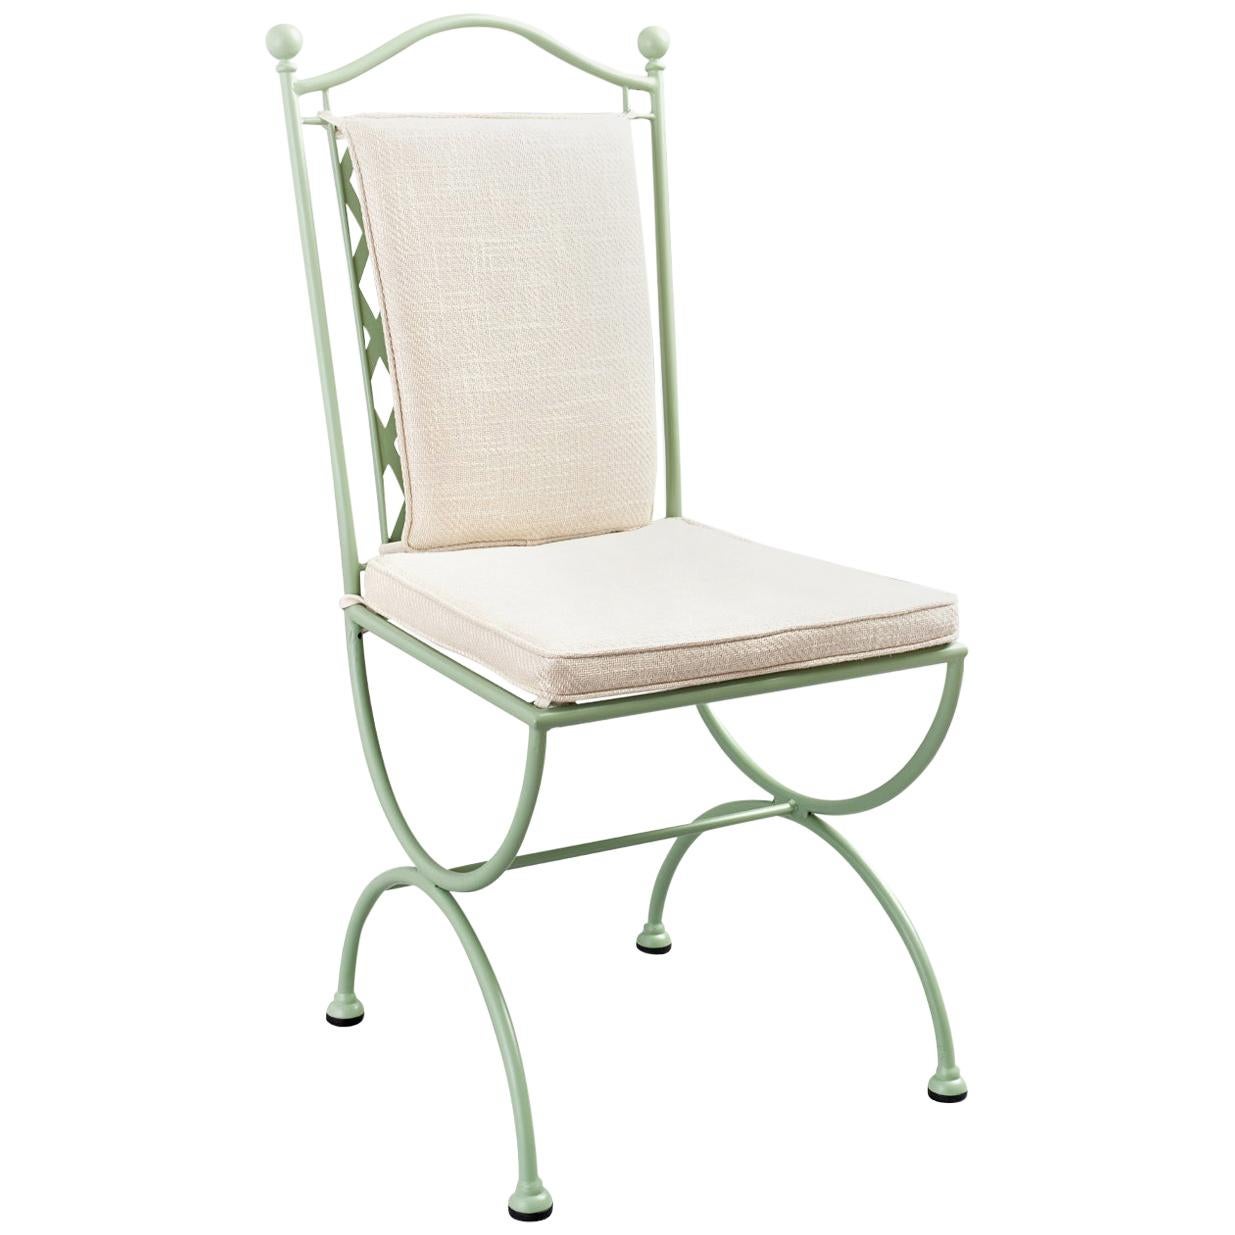 Rombo Outdoor Green Wrought Iron Chair en vente